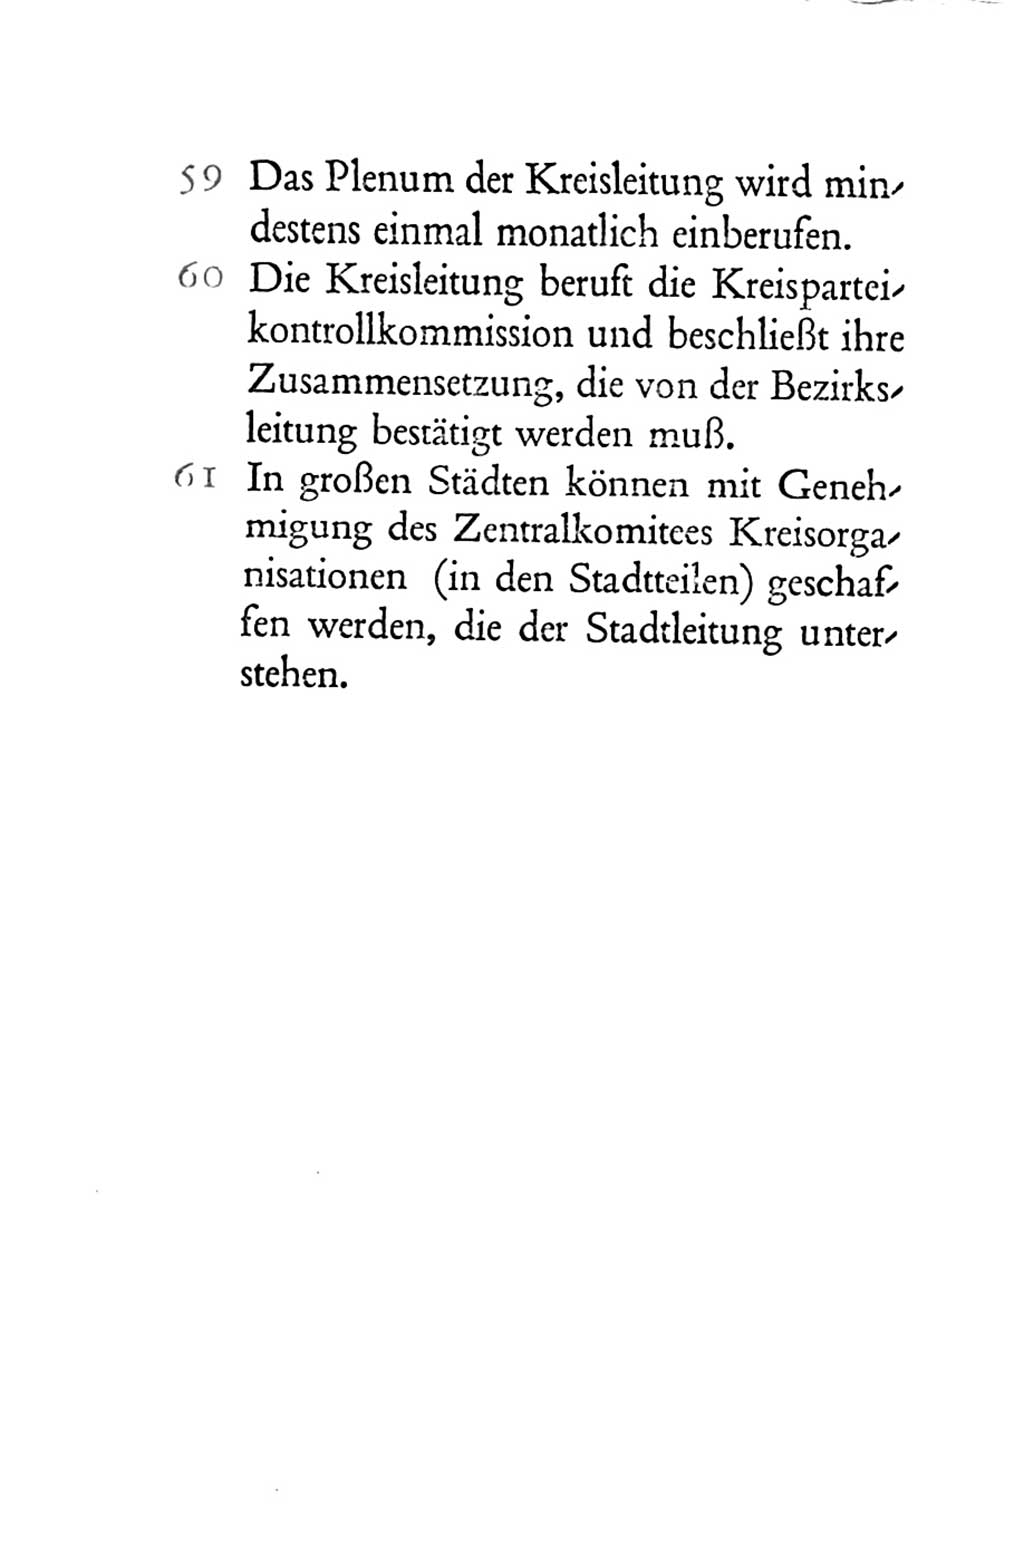 Statut der Sozialistischen Einheitspartei Deutschlands (SED) 1954, Seite 58